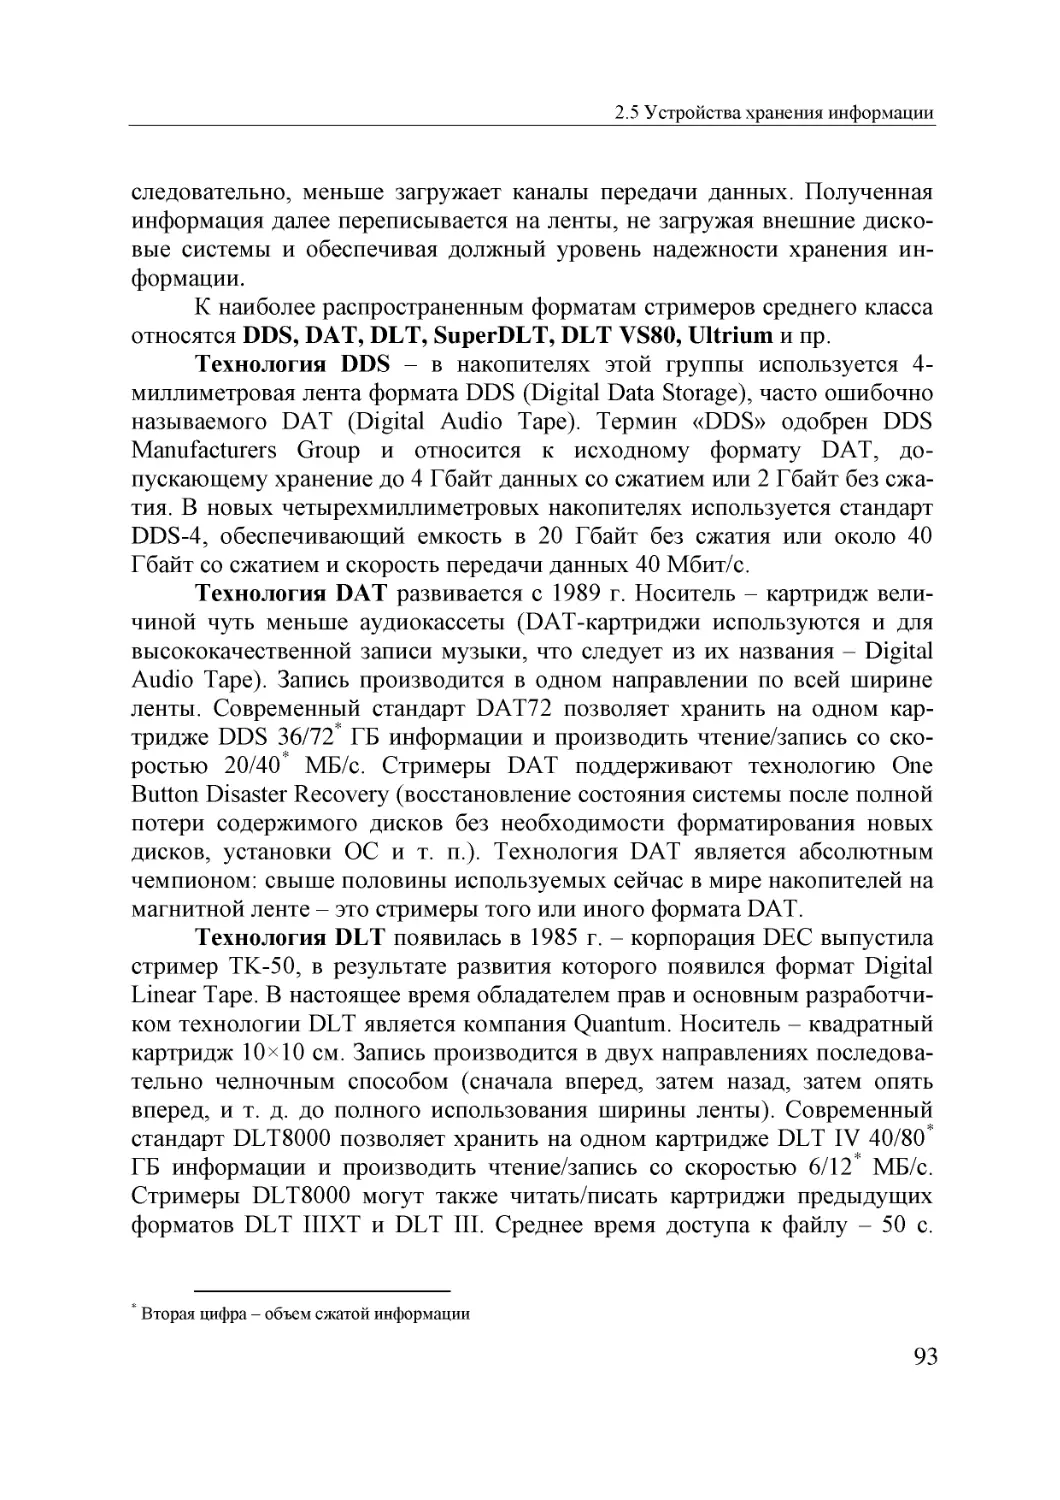 Informatika_Uchebnik_dlya_vuzov_2010 93